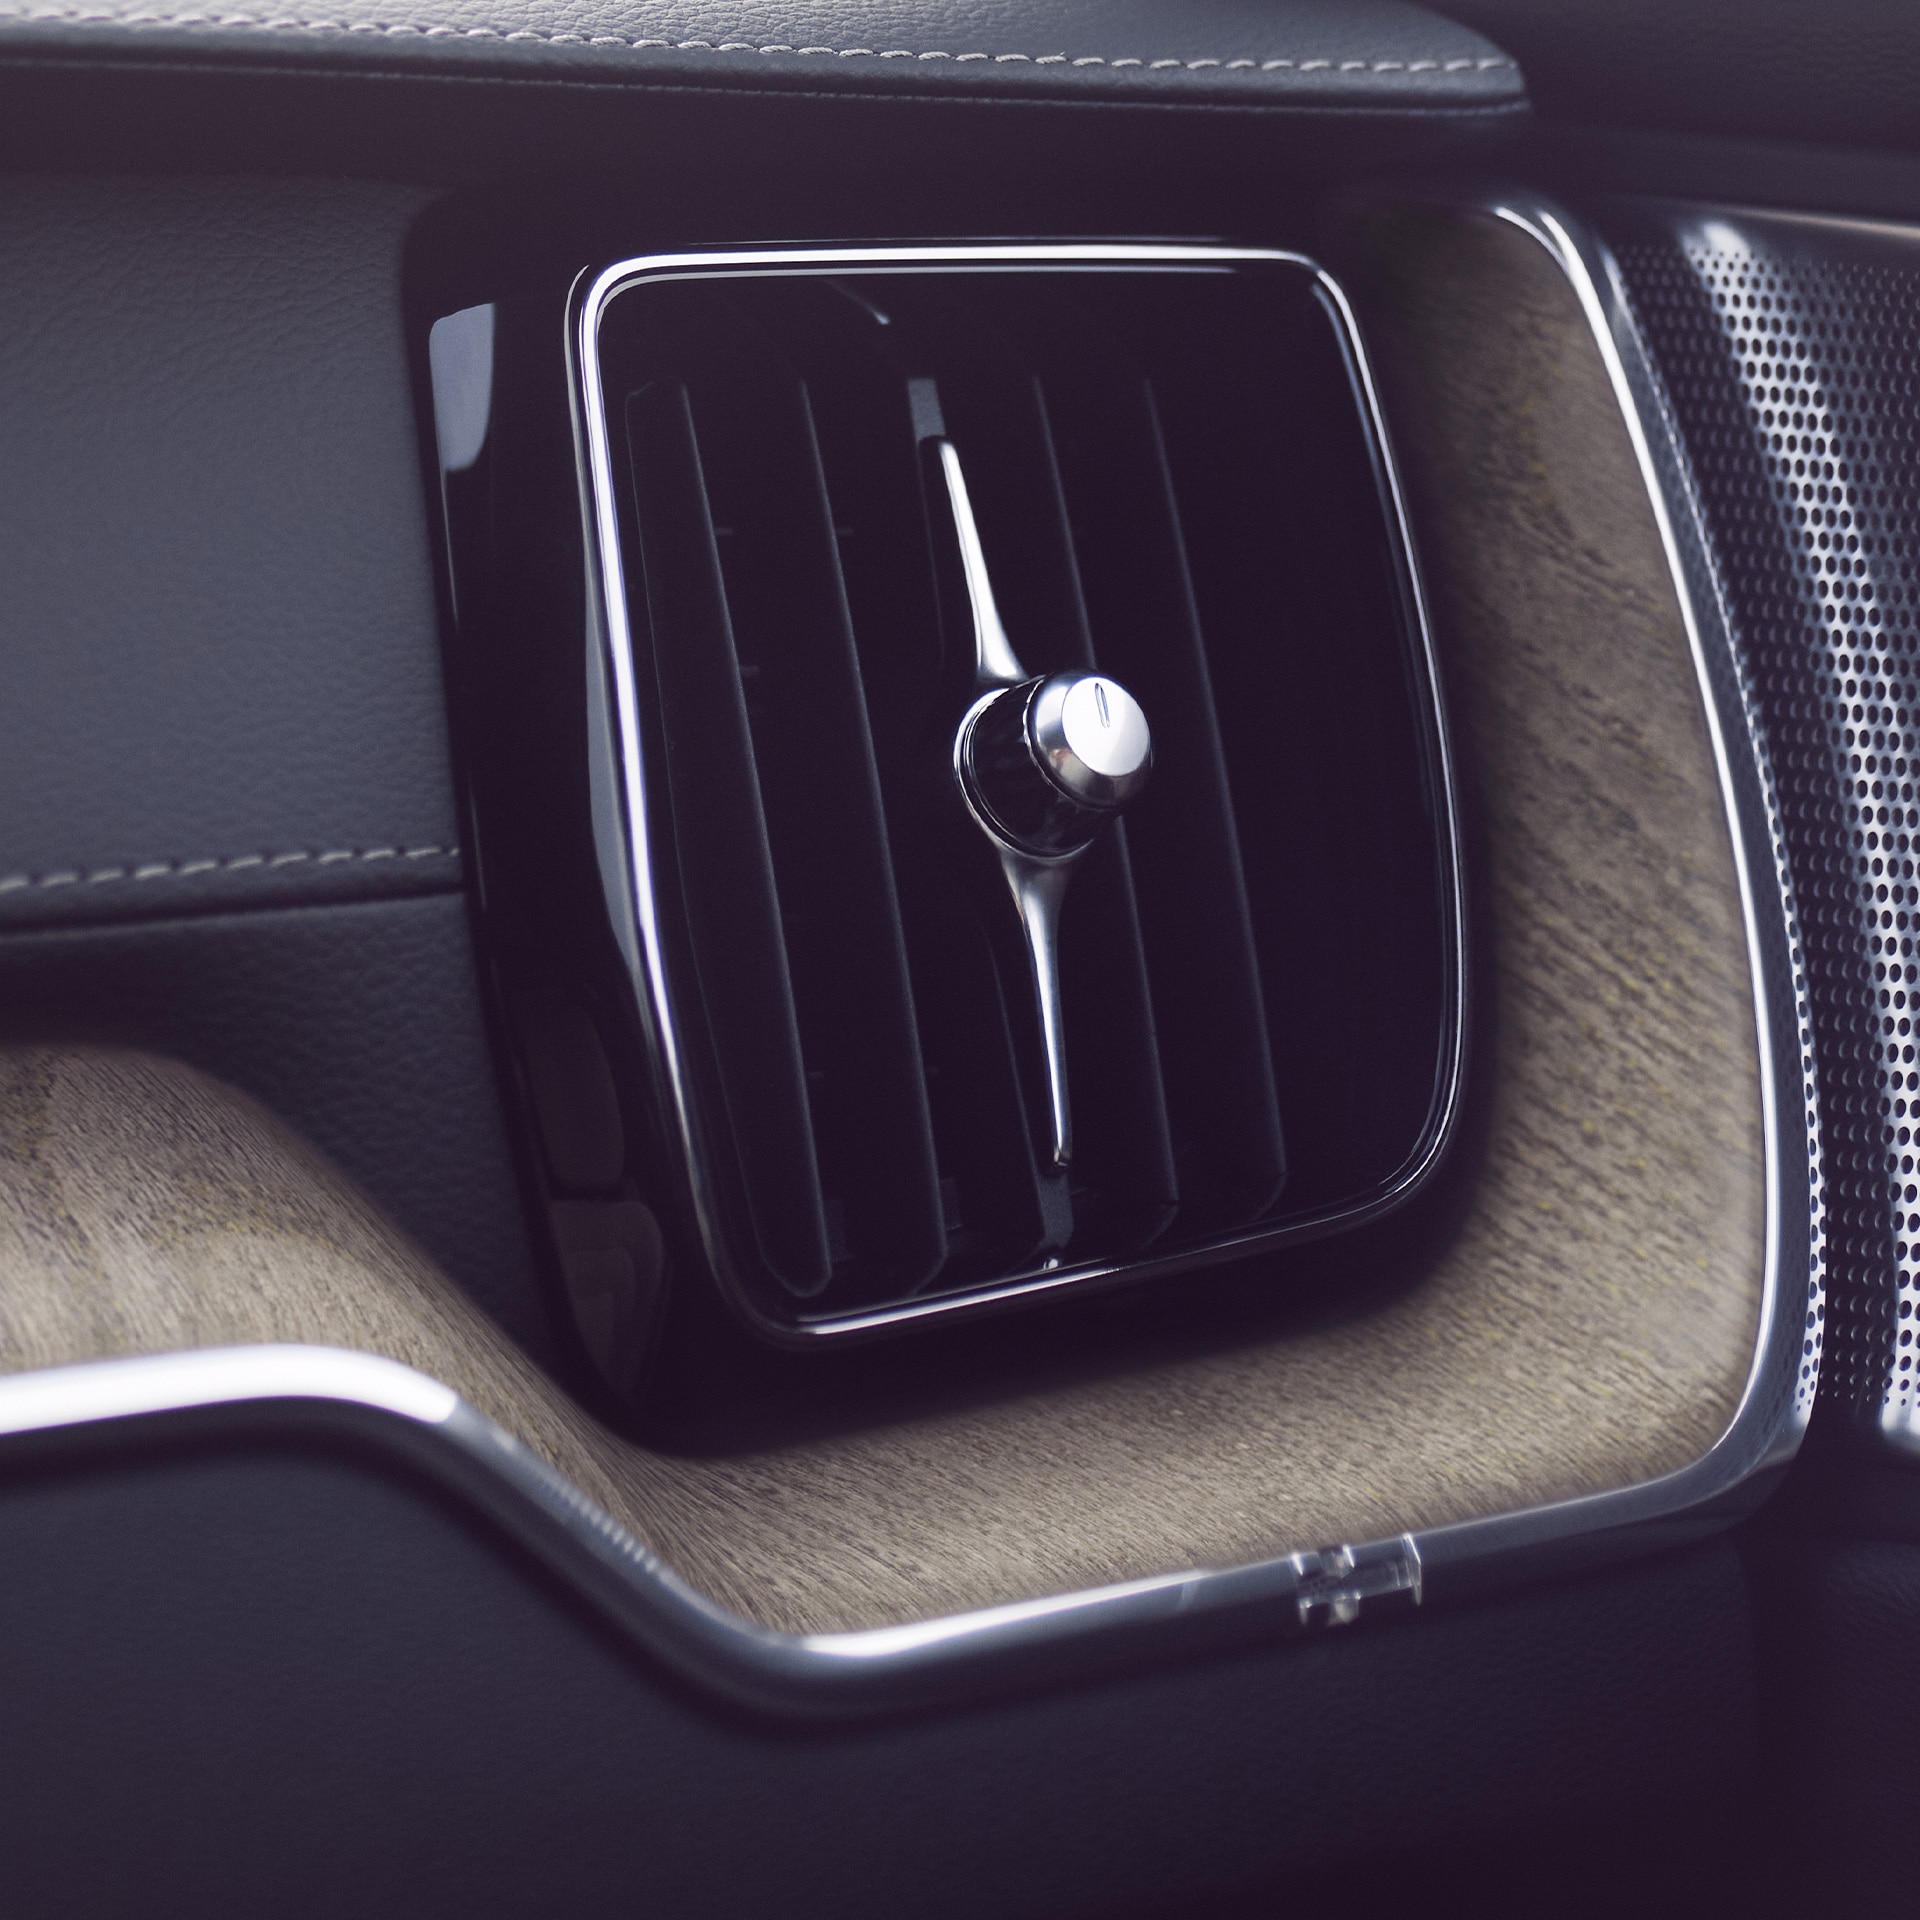 Napredni prečišćivač vazduha u modelu Volvo XC60 pomaže vama i vašim putnicima da uživate u boljem i zdravijem kvalitetu vazduha.